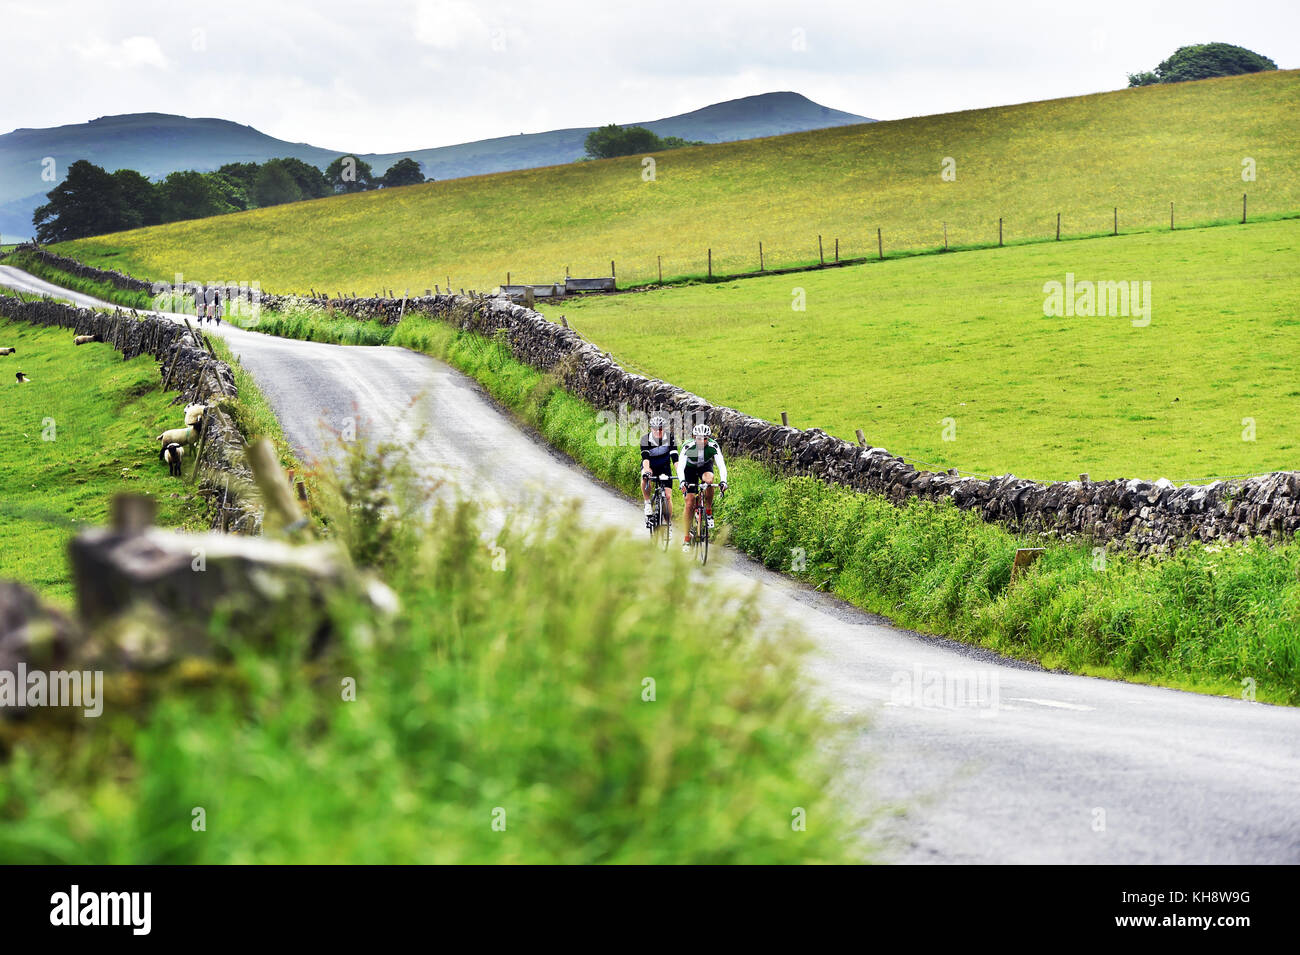 Un cycliste à vélo dans le Yorkshire Dales à côté d'un mur en pierre sèche UK Banque D'Images